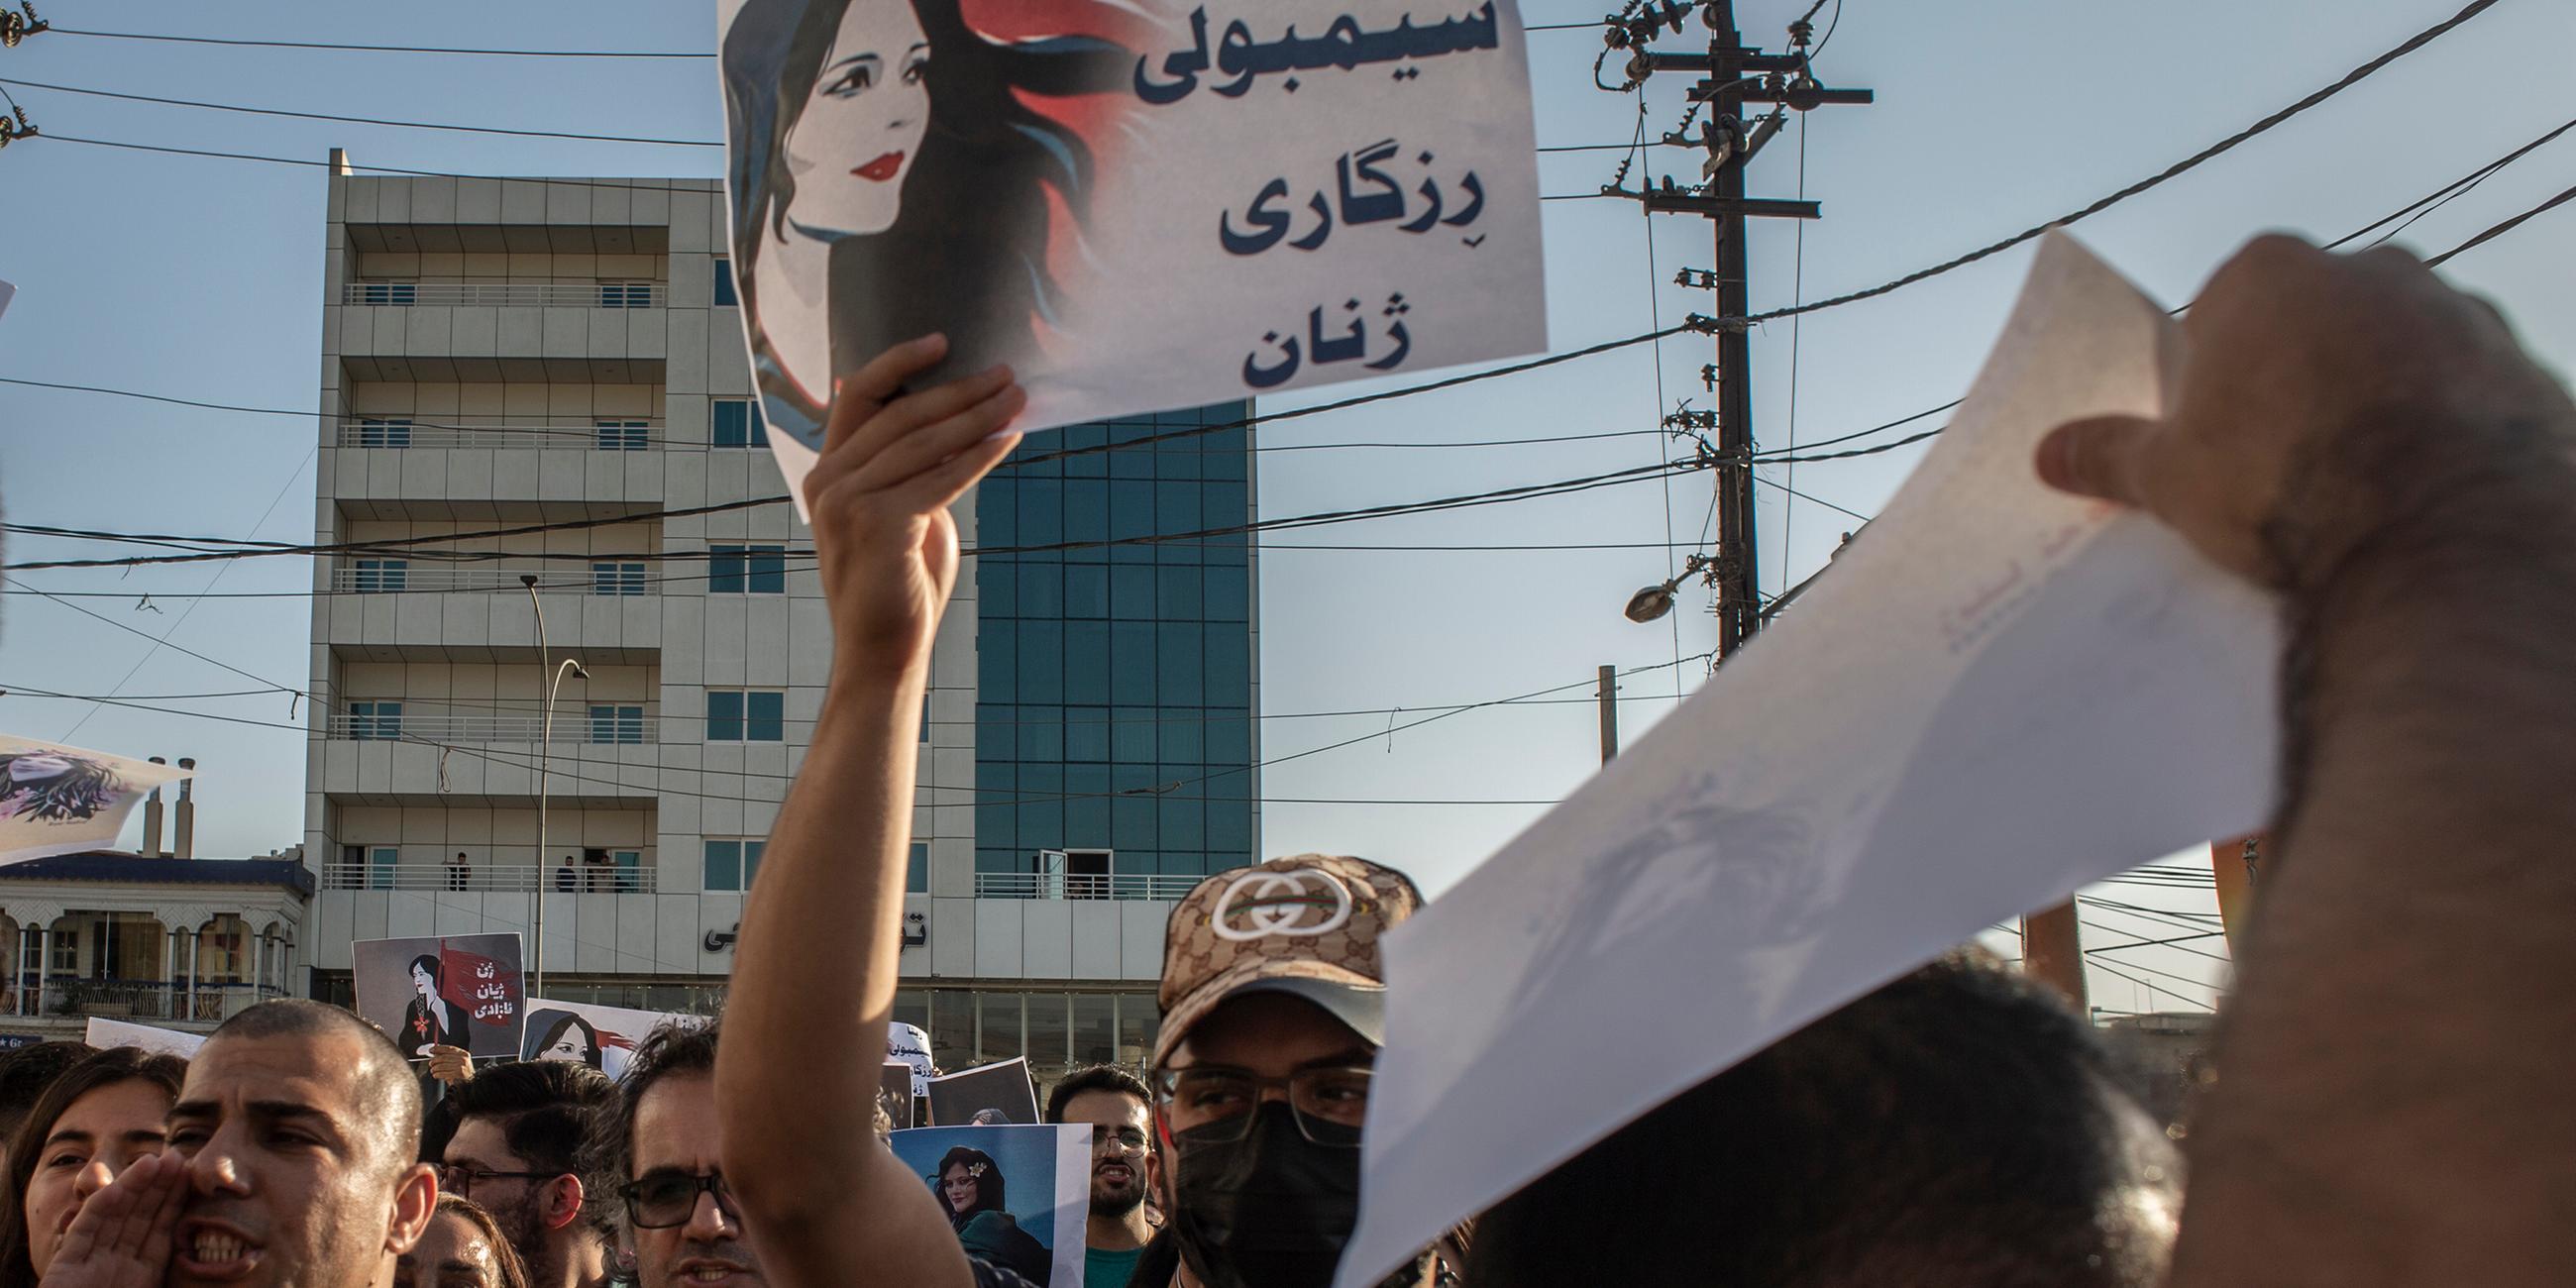 Menschen protestieren und halten Schilder um den Tod von Mahsa Amini zu verurteilen